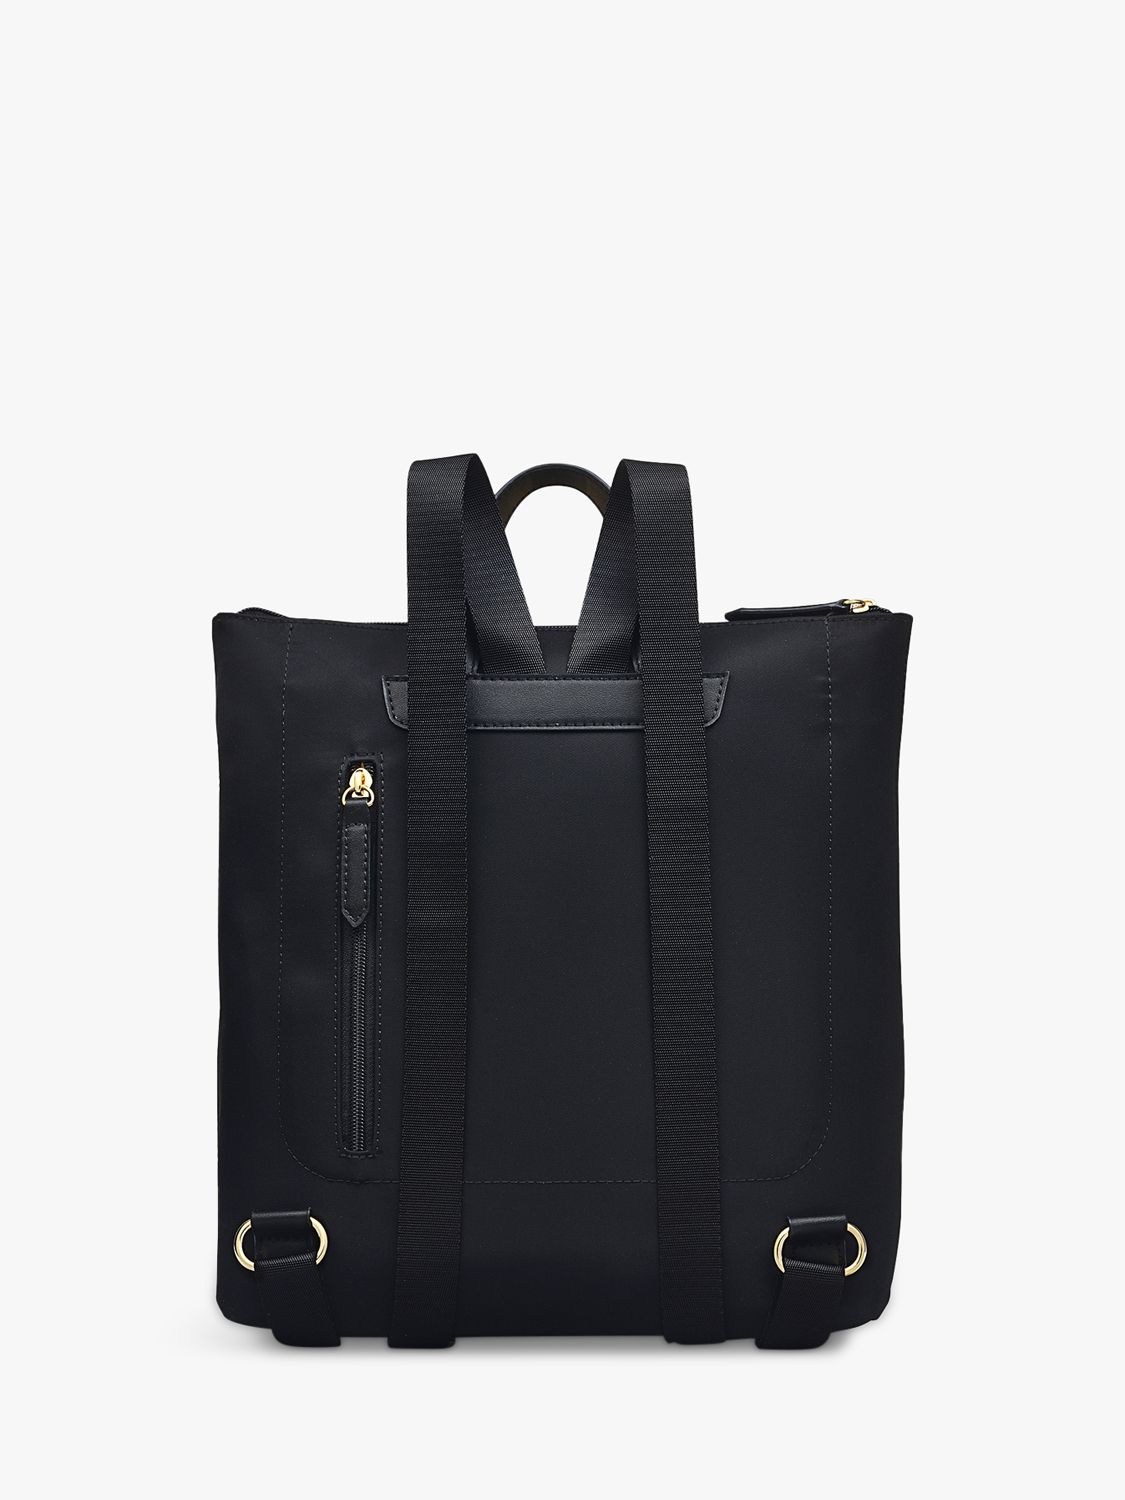 Radley Pocket Essentials Responsible Large Backpack, Black at John ...